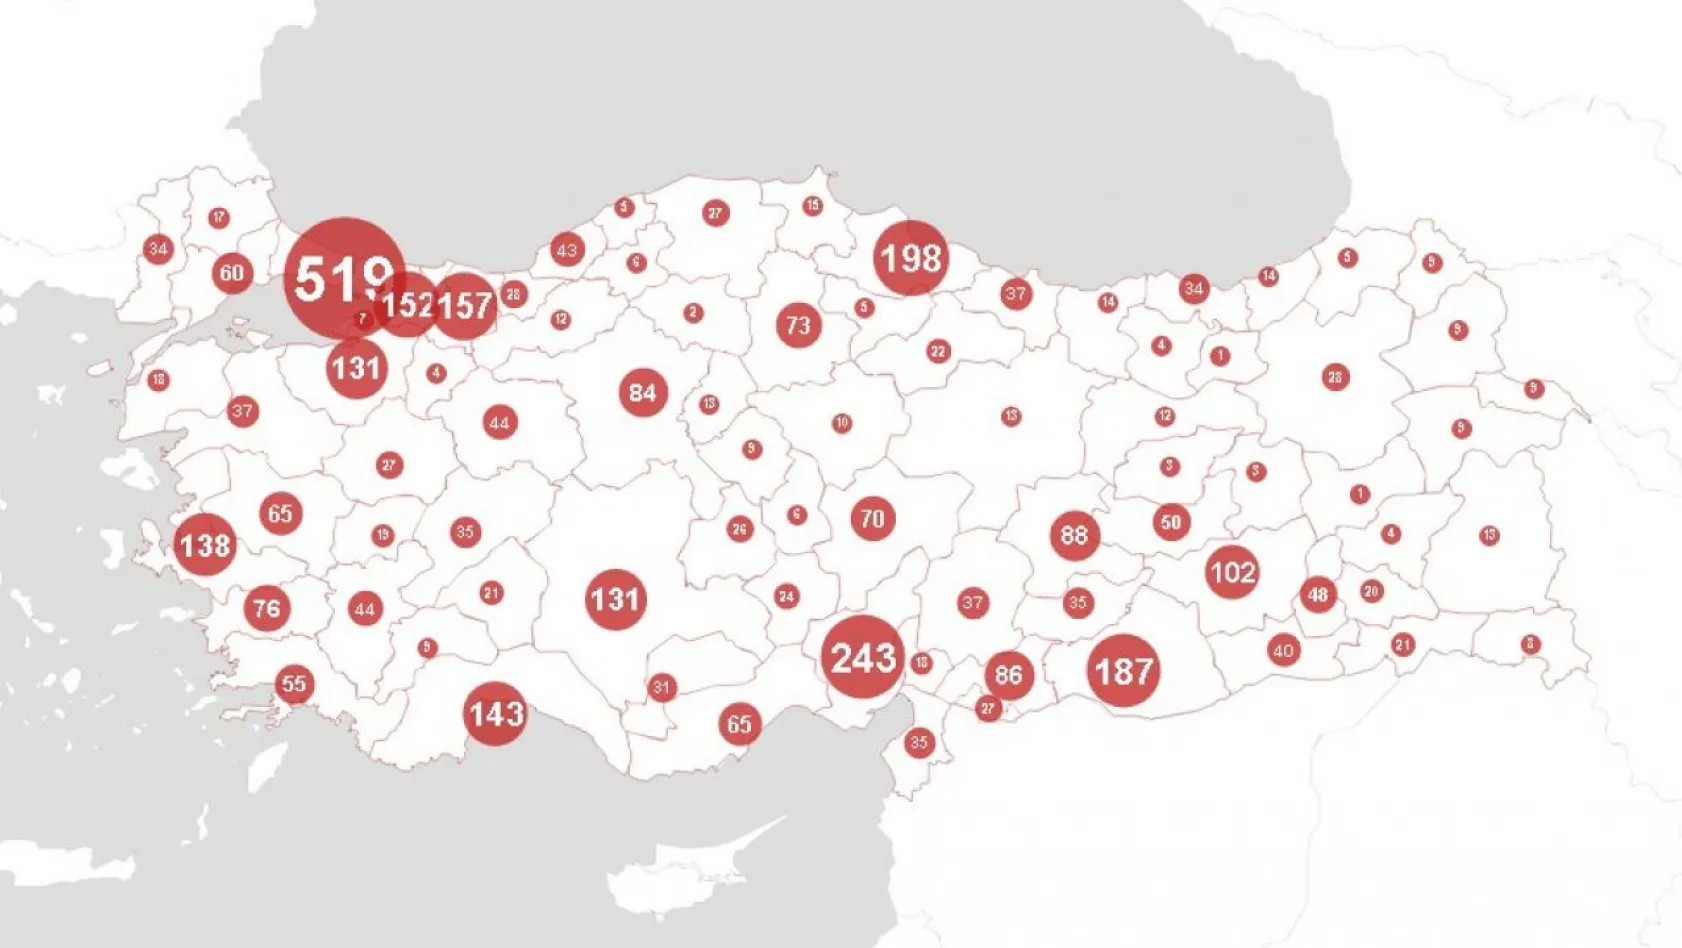 İşte şiddet haritasında Kayseri'nin durumu: 42 kişi öldü!